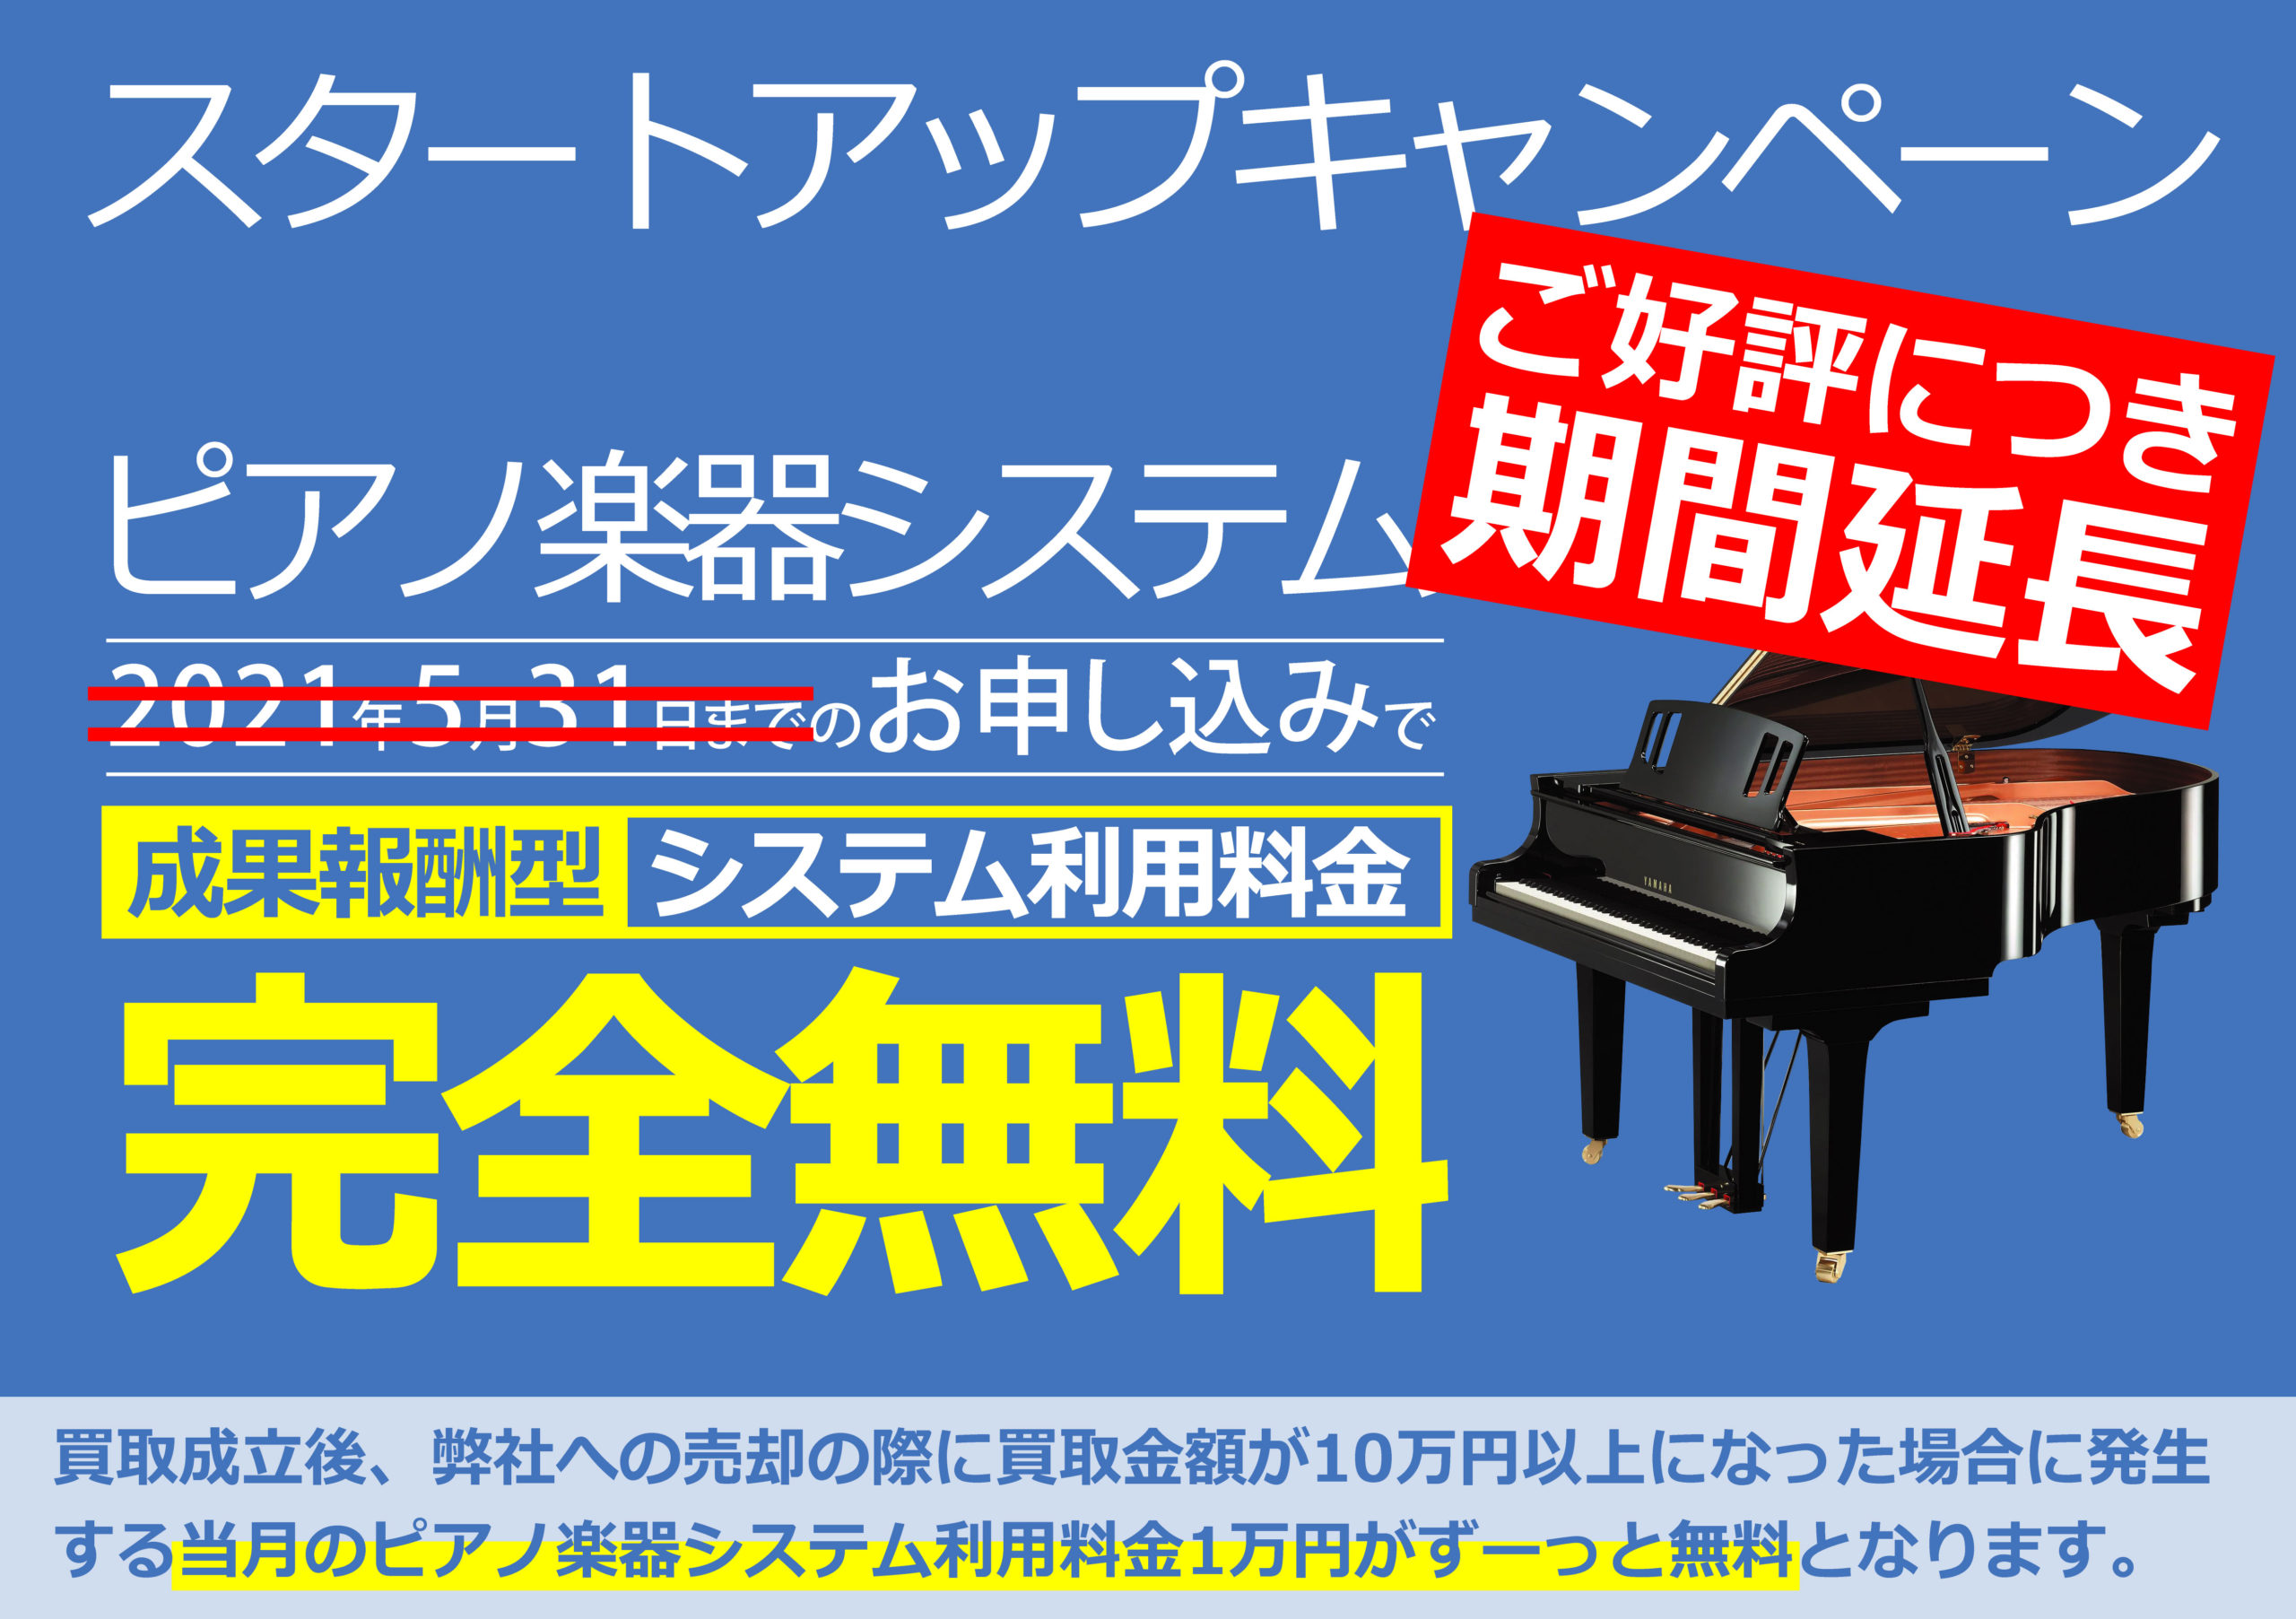 ピアノ楽器システム利用料金完全無料キャンペーン